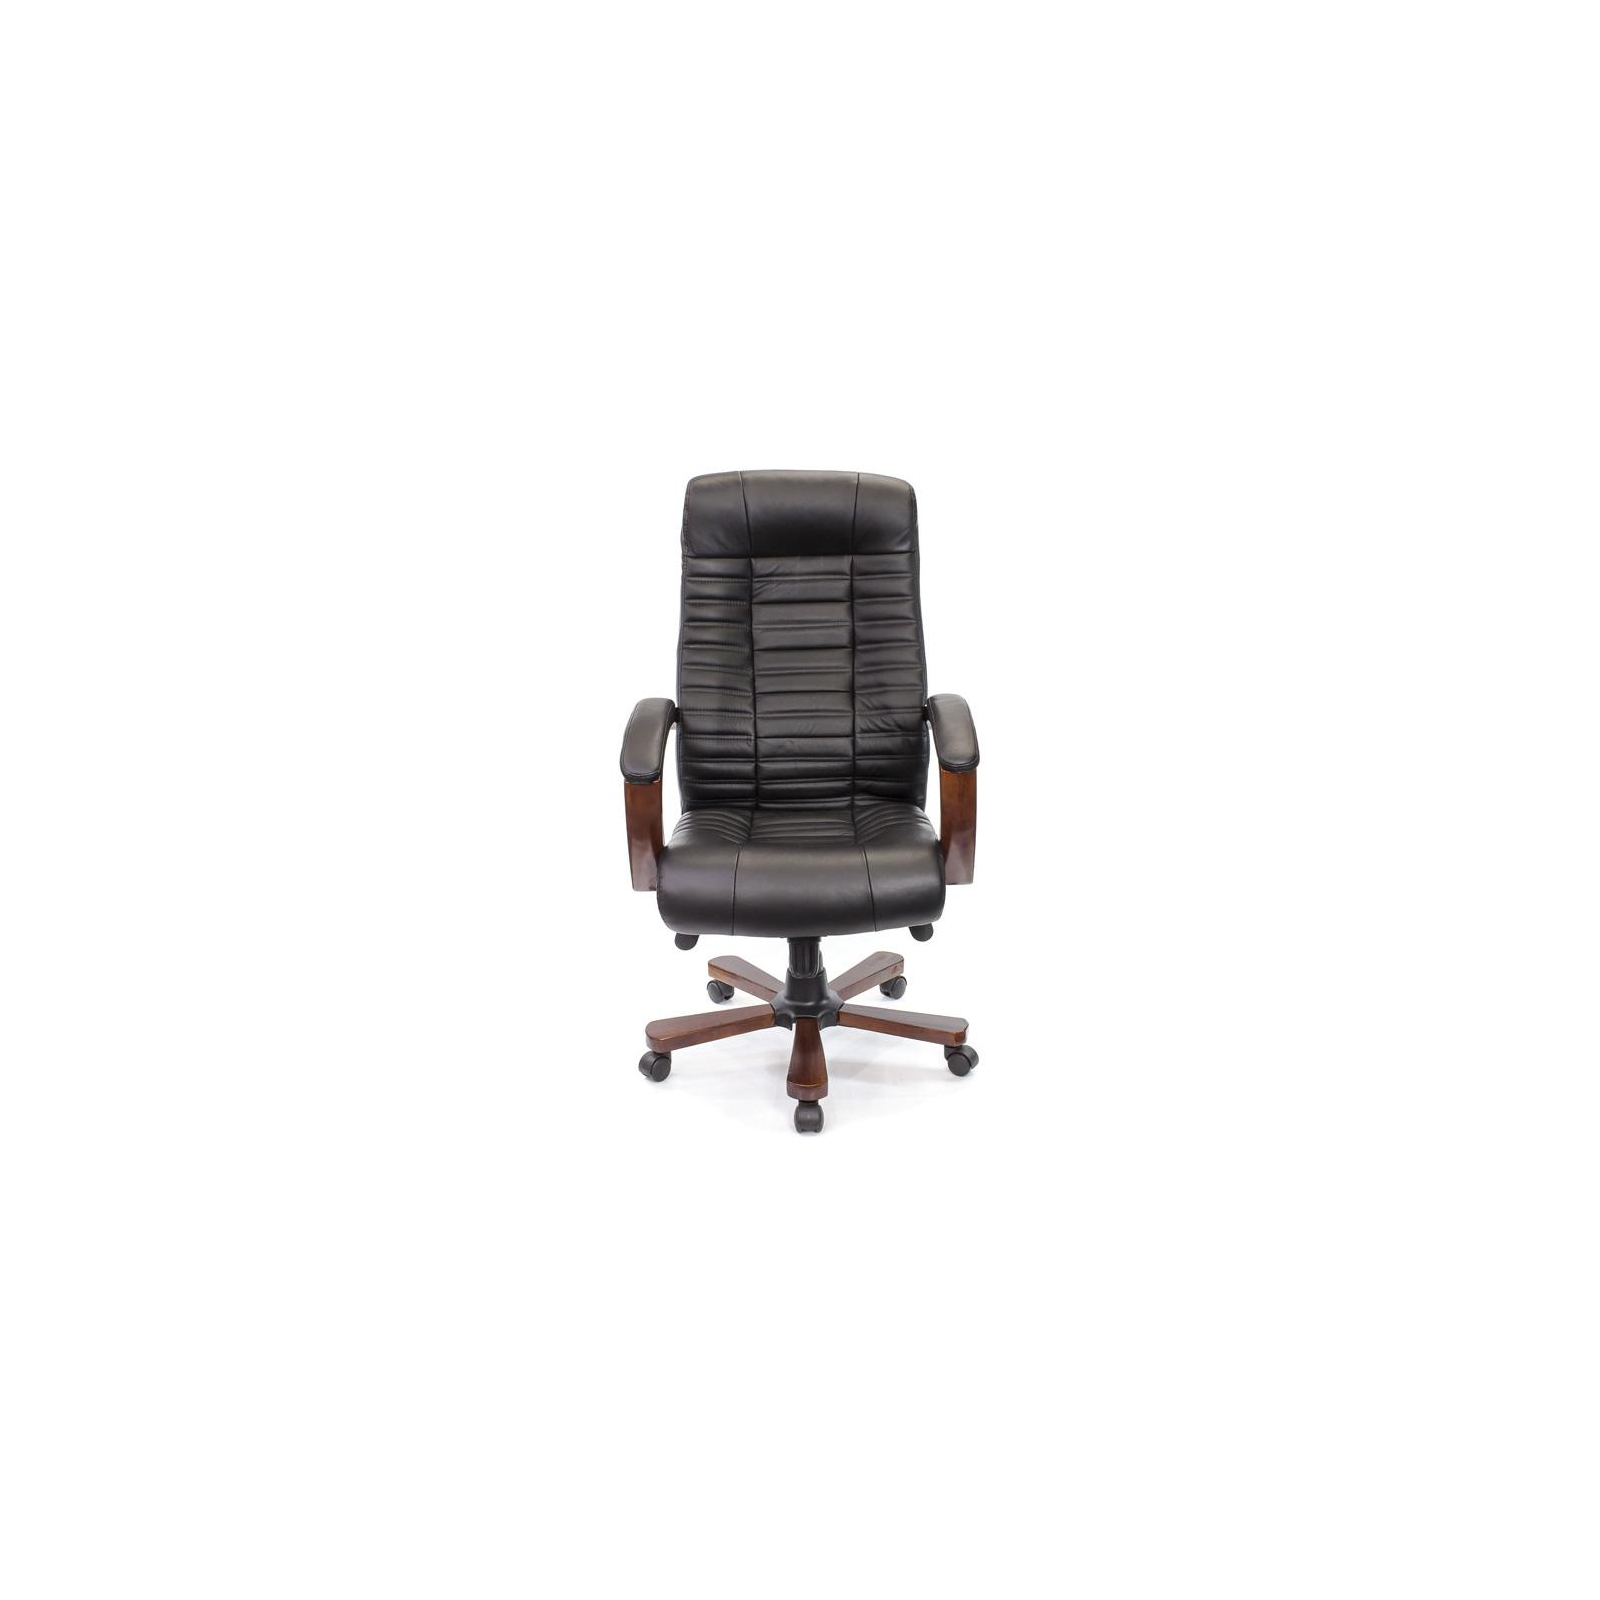 Офисное кресло Аклас Атлант EX MB Коричневое (09639) изображение 2